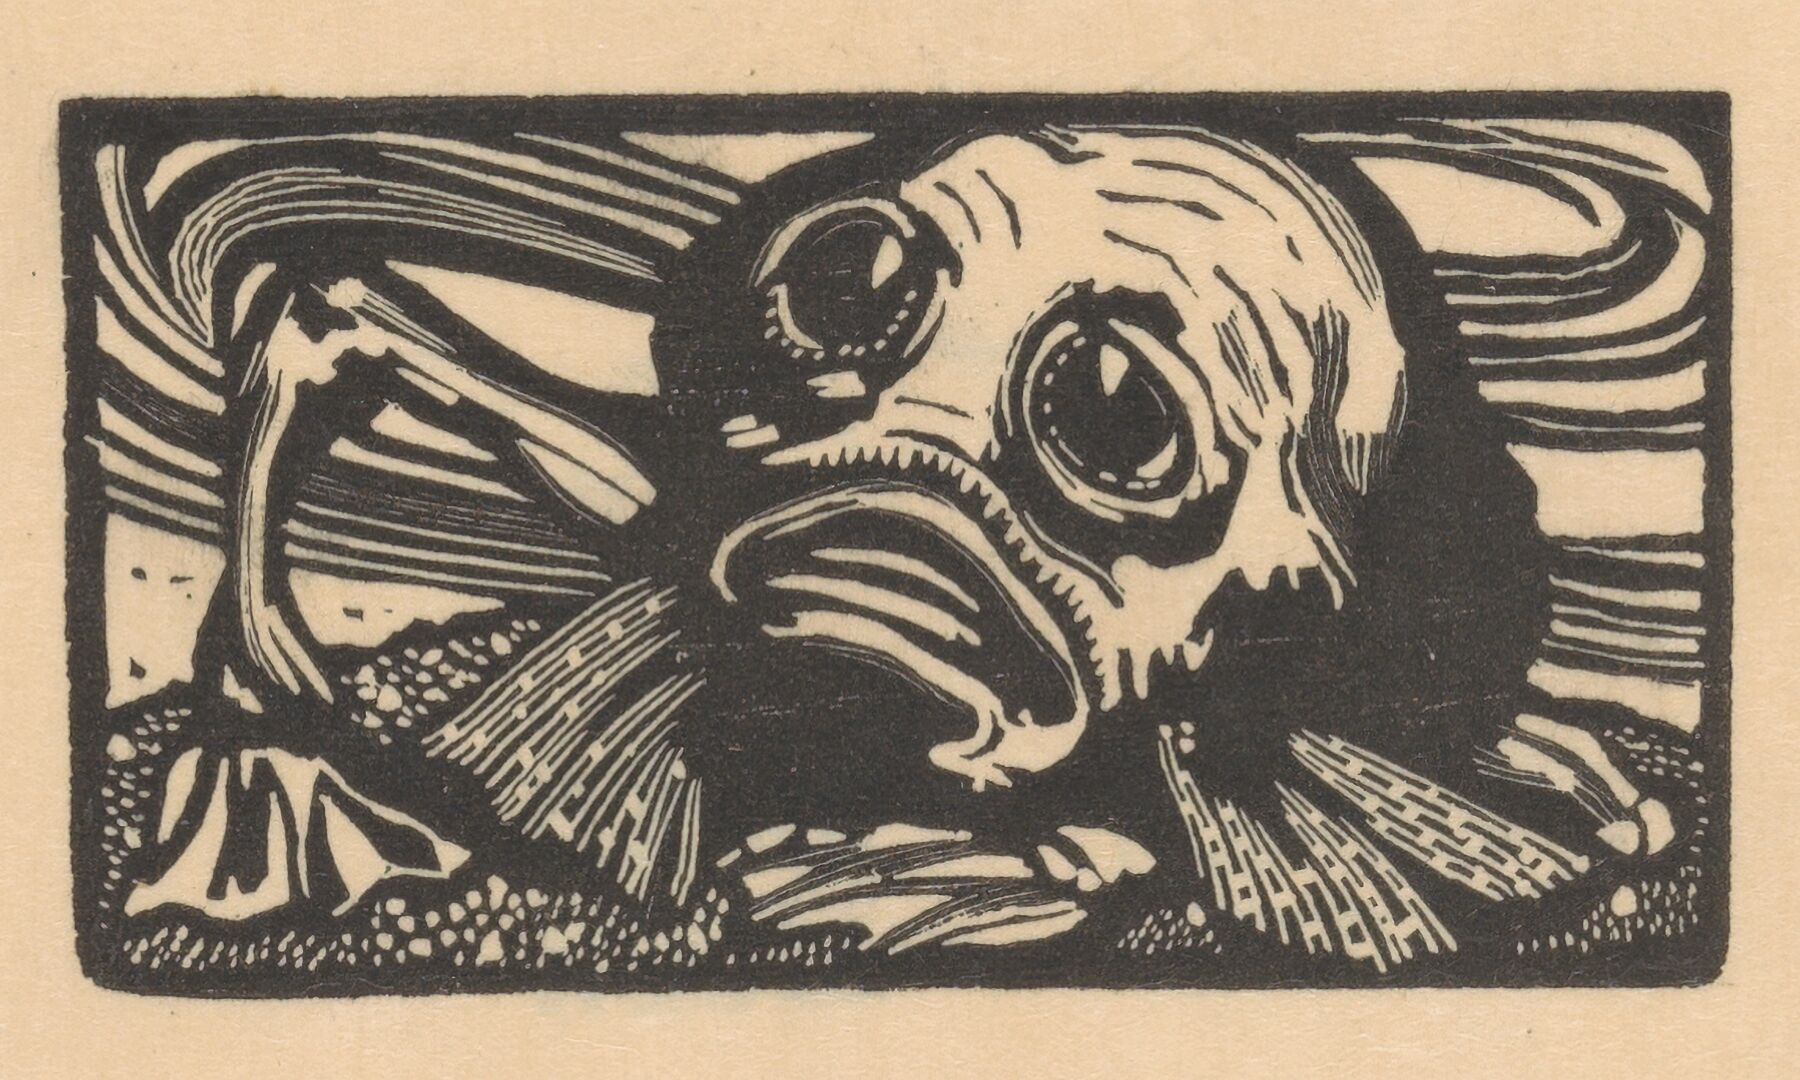 Vignette with bearded monster for the Mercure de France, Johannes Josephus Aarts, 1900